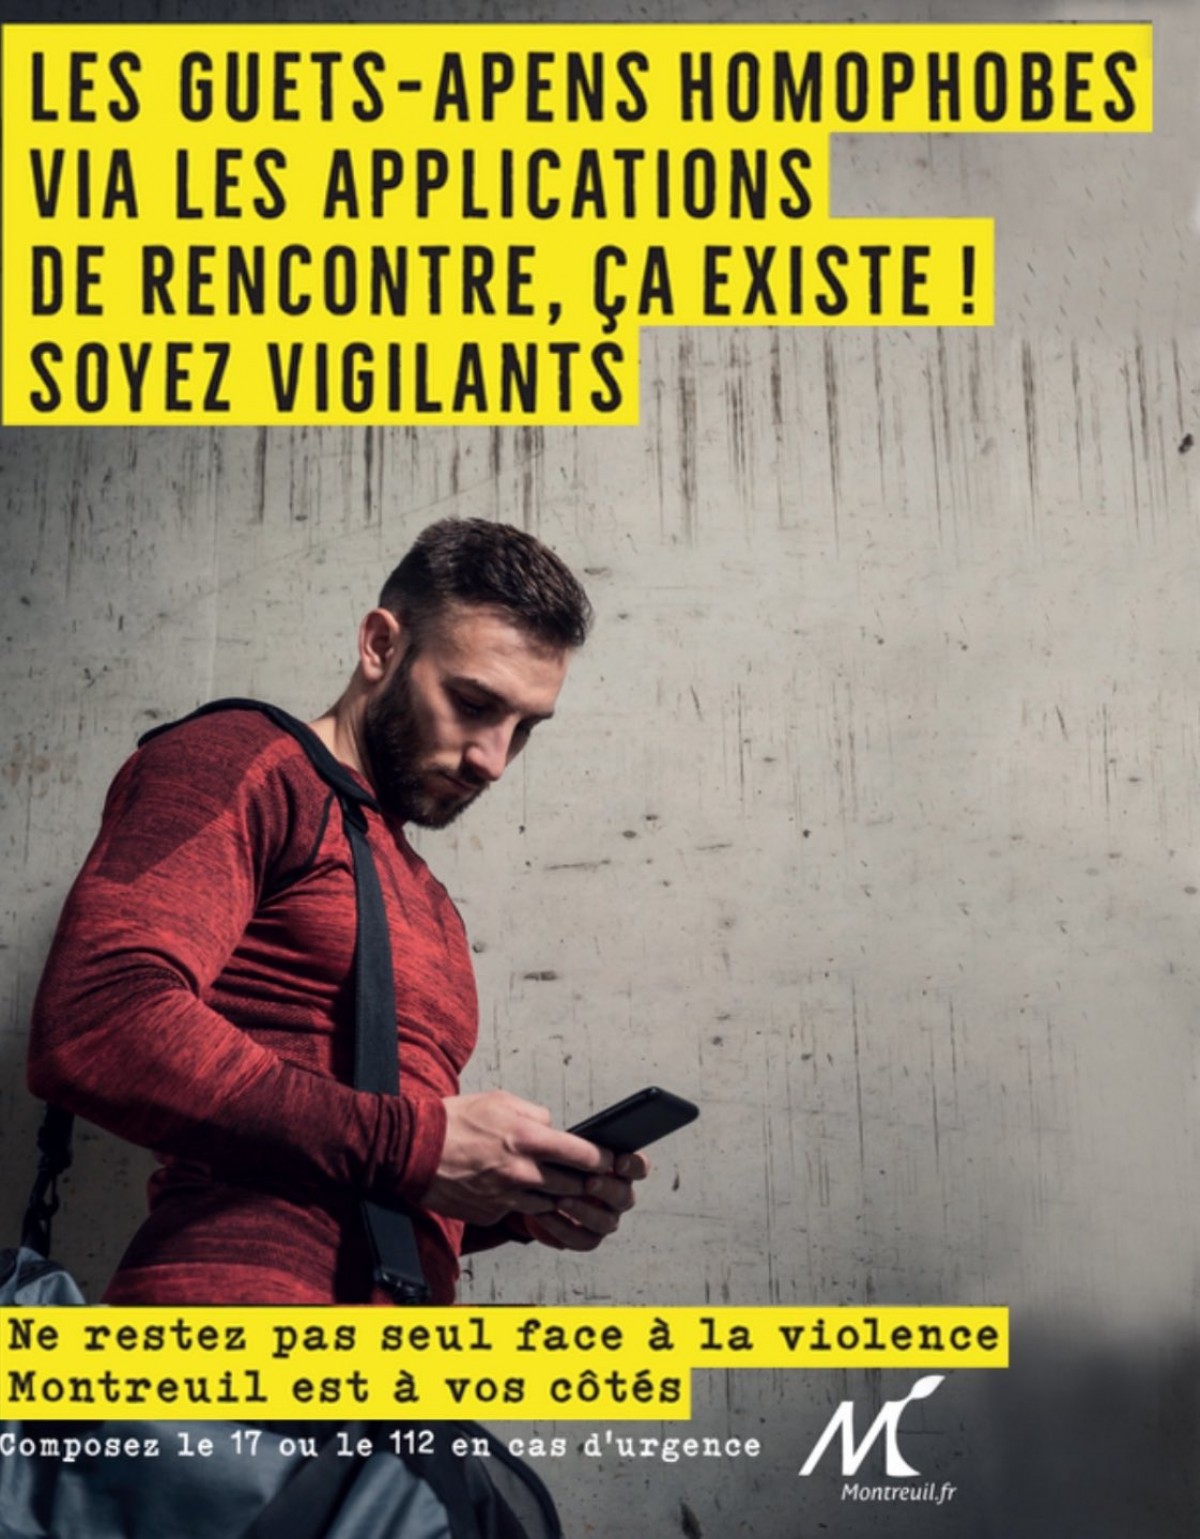 La ville de Montreuil dit STOP aux guets-apens homophobes